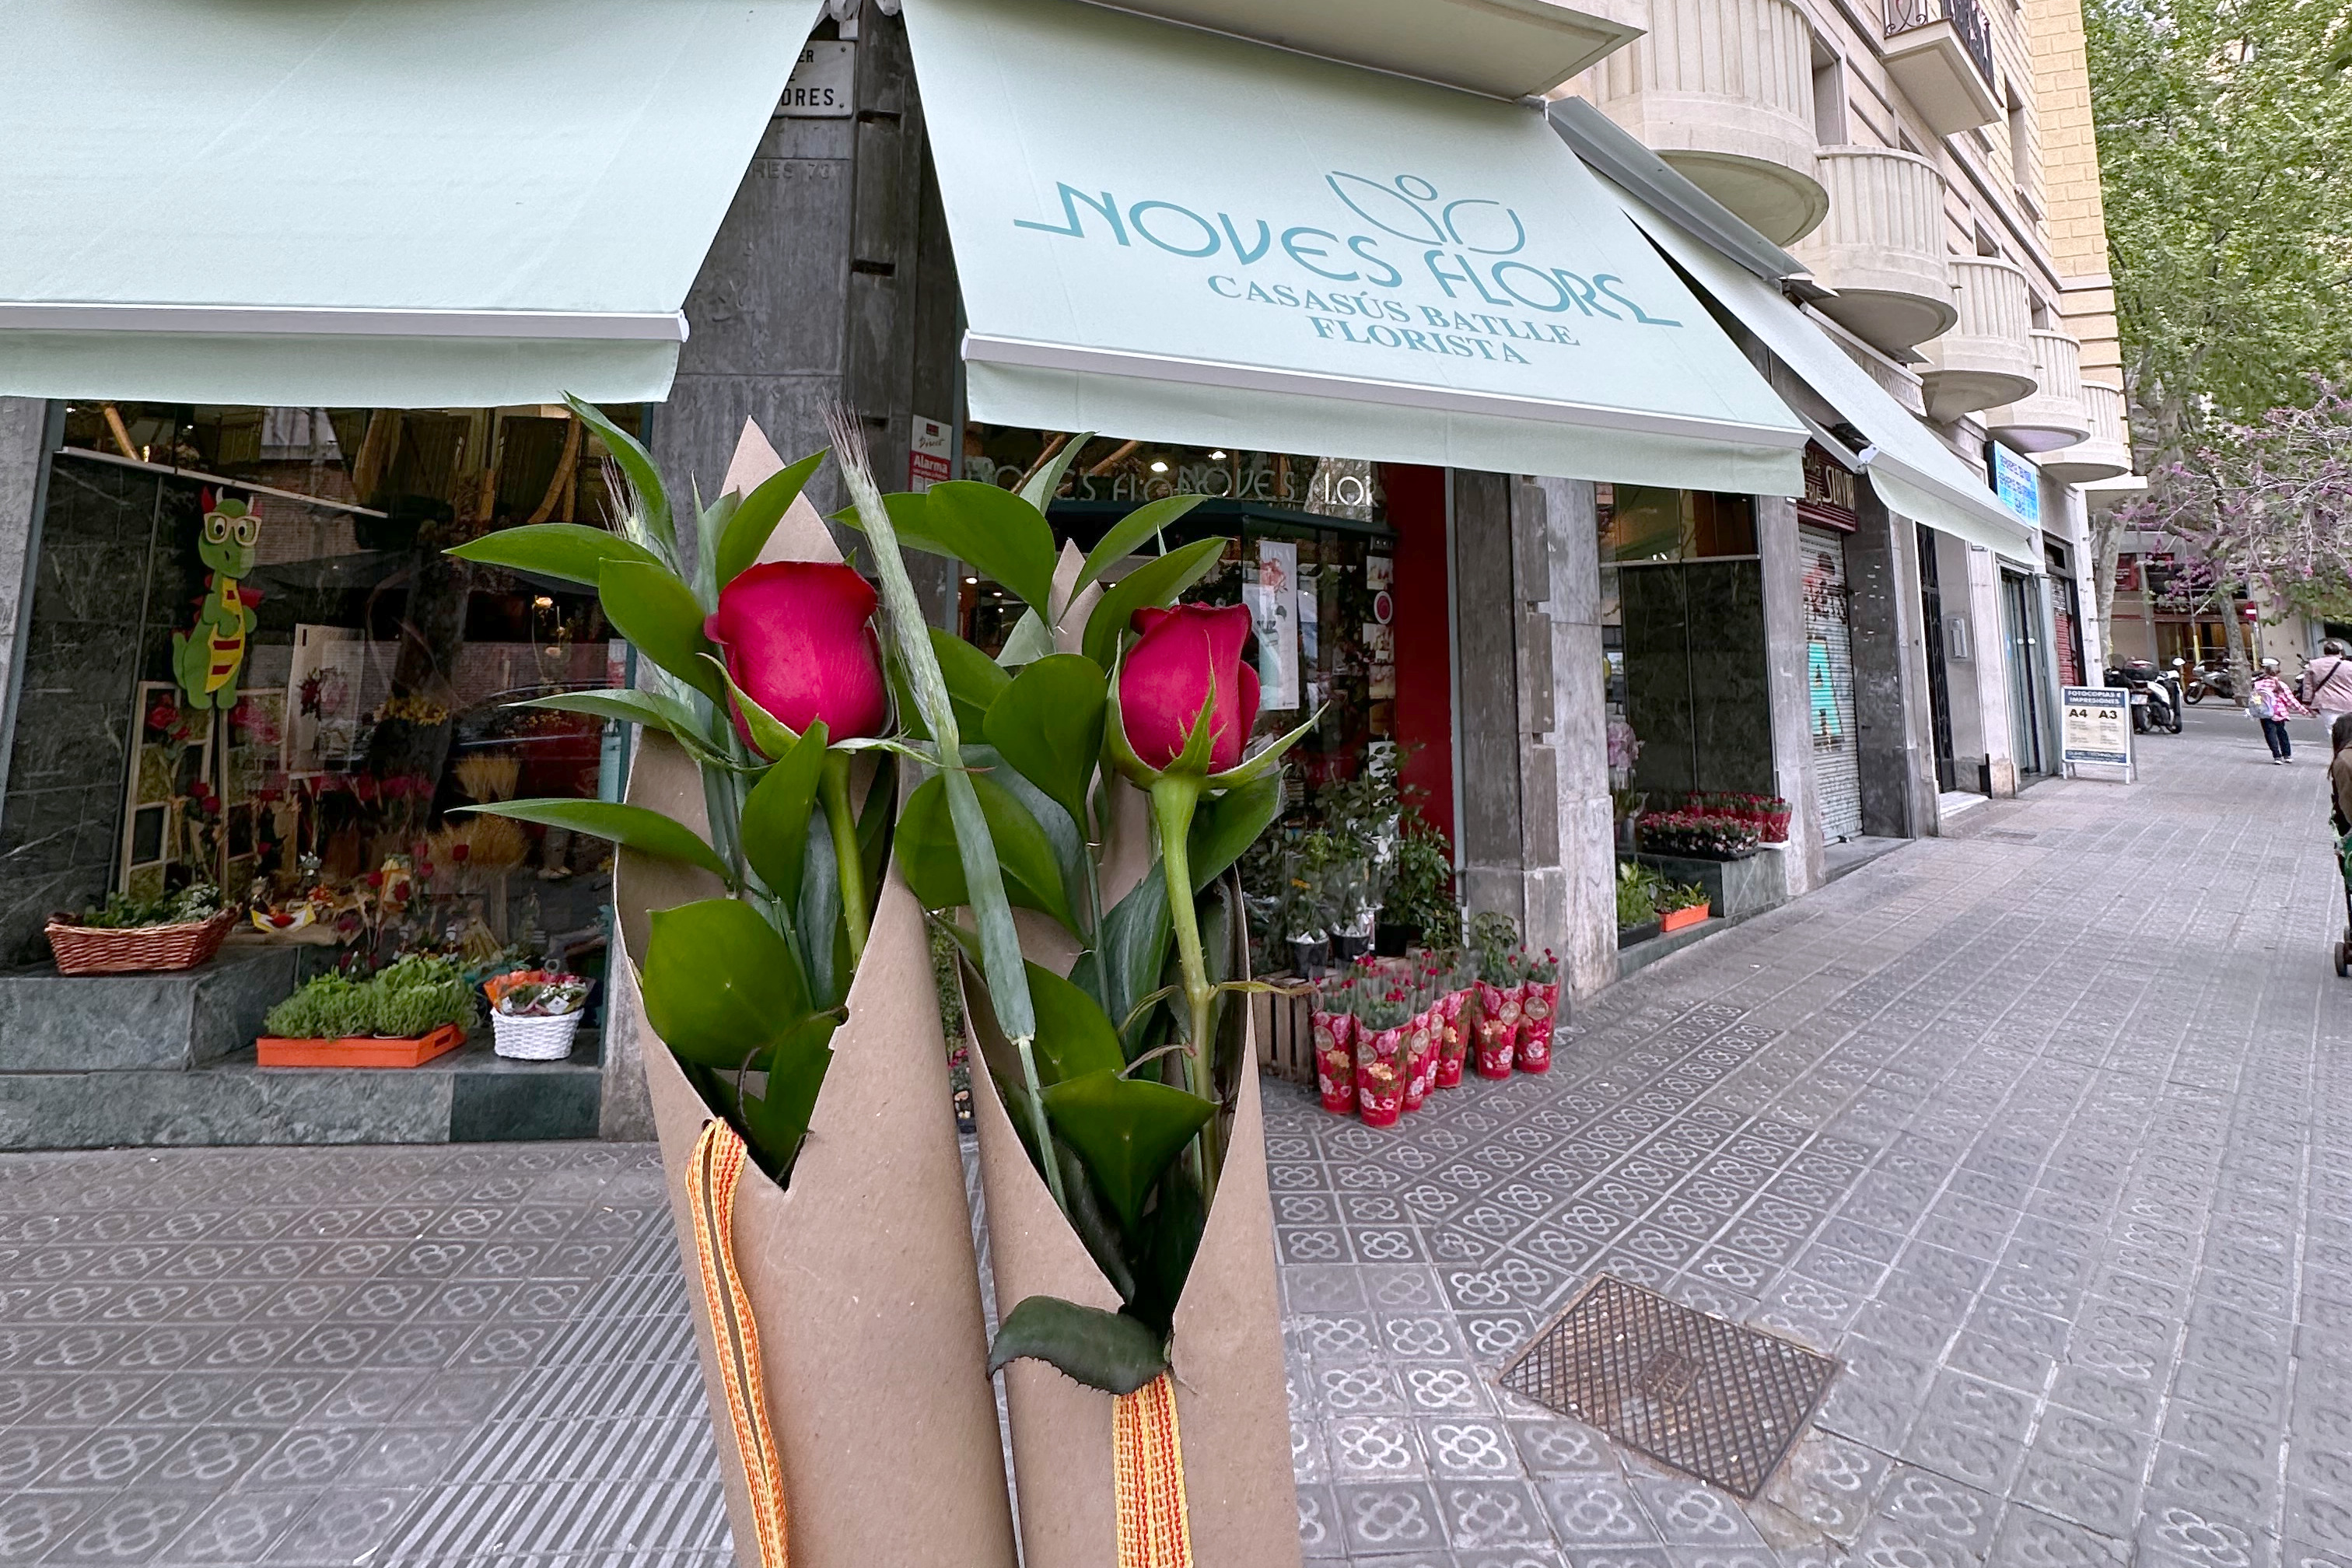 Two Sant Jordi roses in front of the Noves Flors flower shops in Barcelona